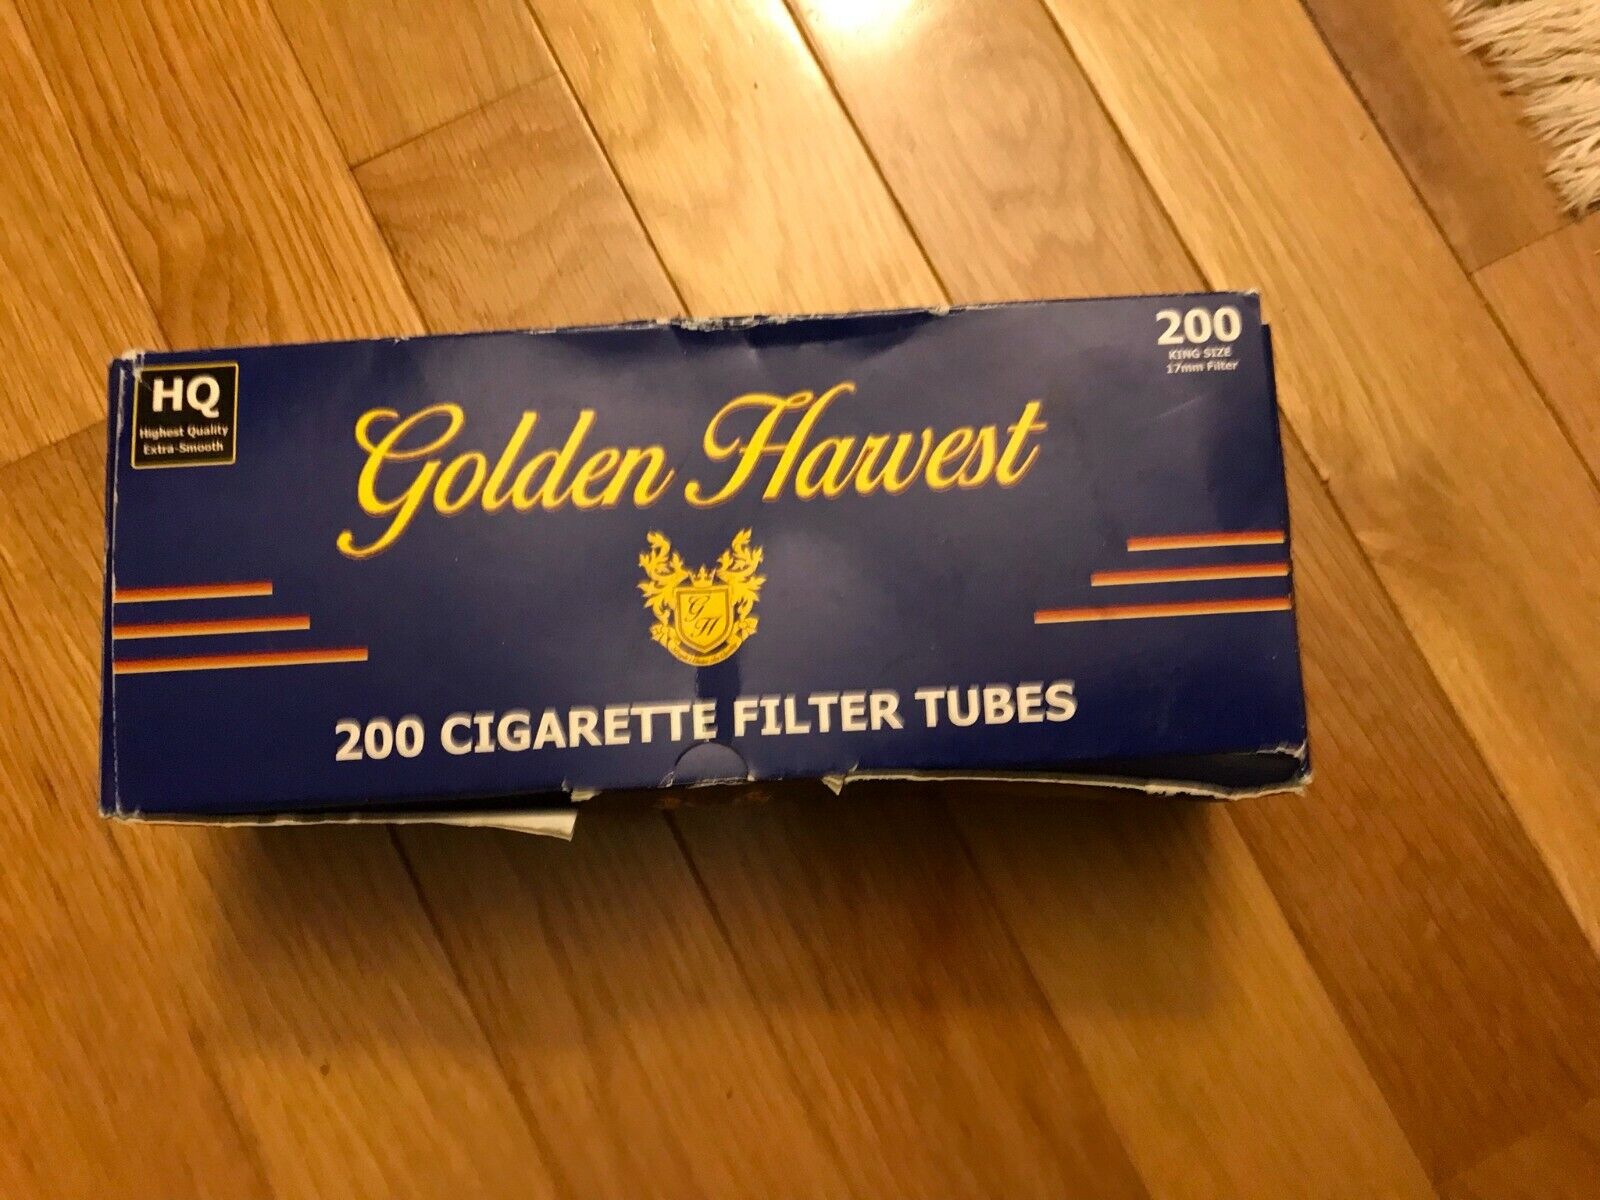 Menthol 100 mm Golden Harvest Cigarette Filter Tubes 200 ct 1 Box 25 mm Filter